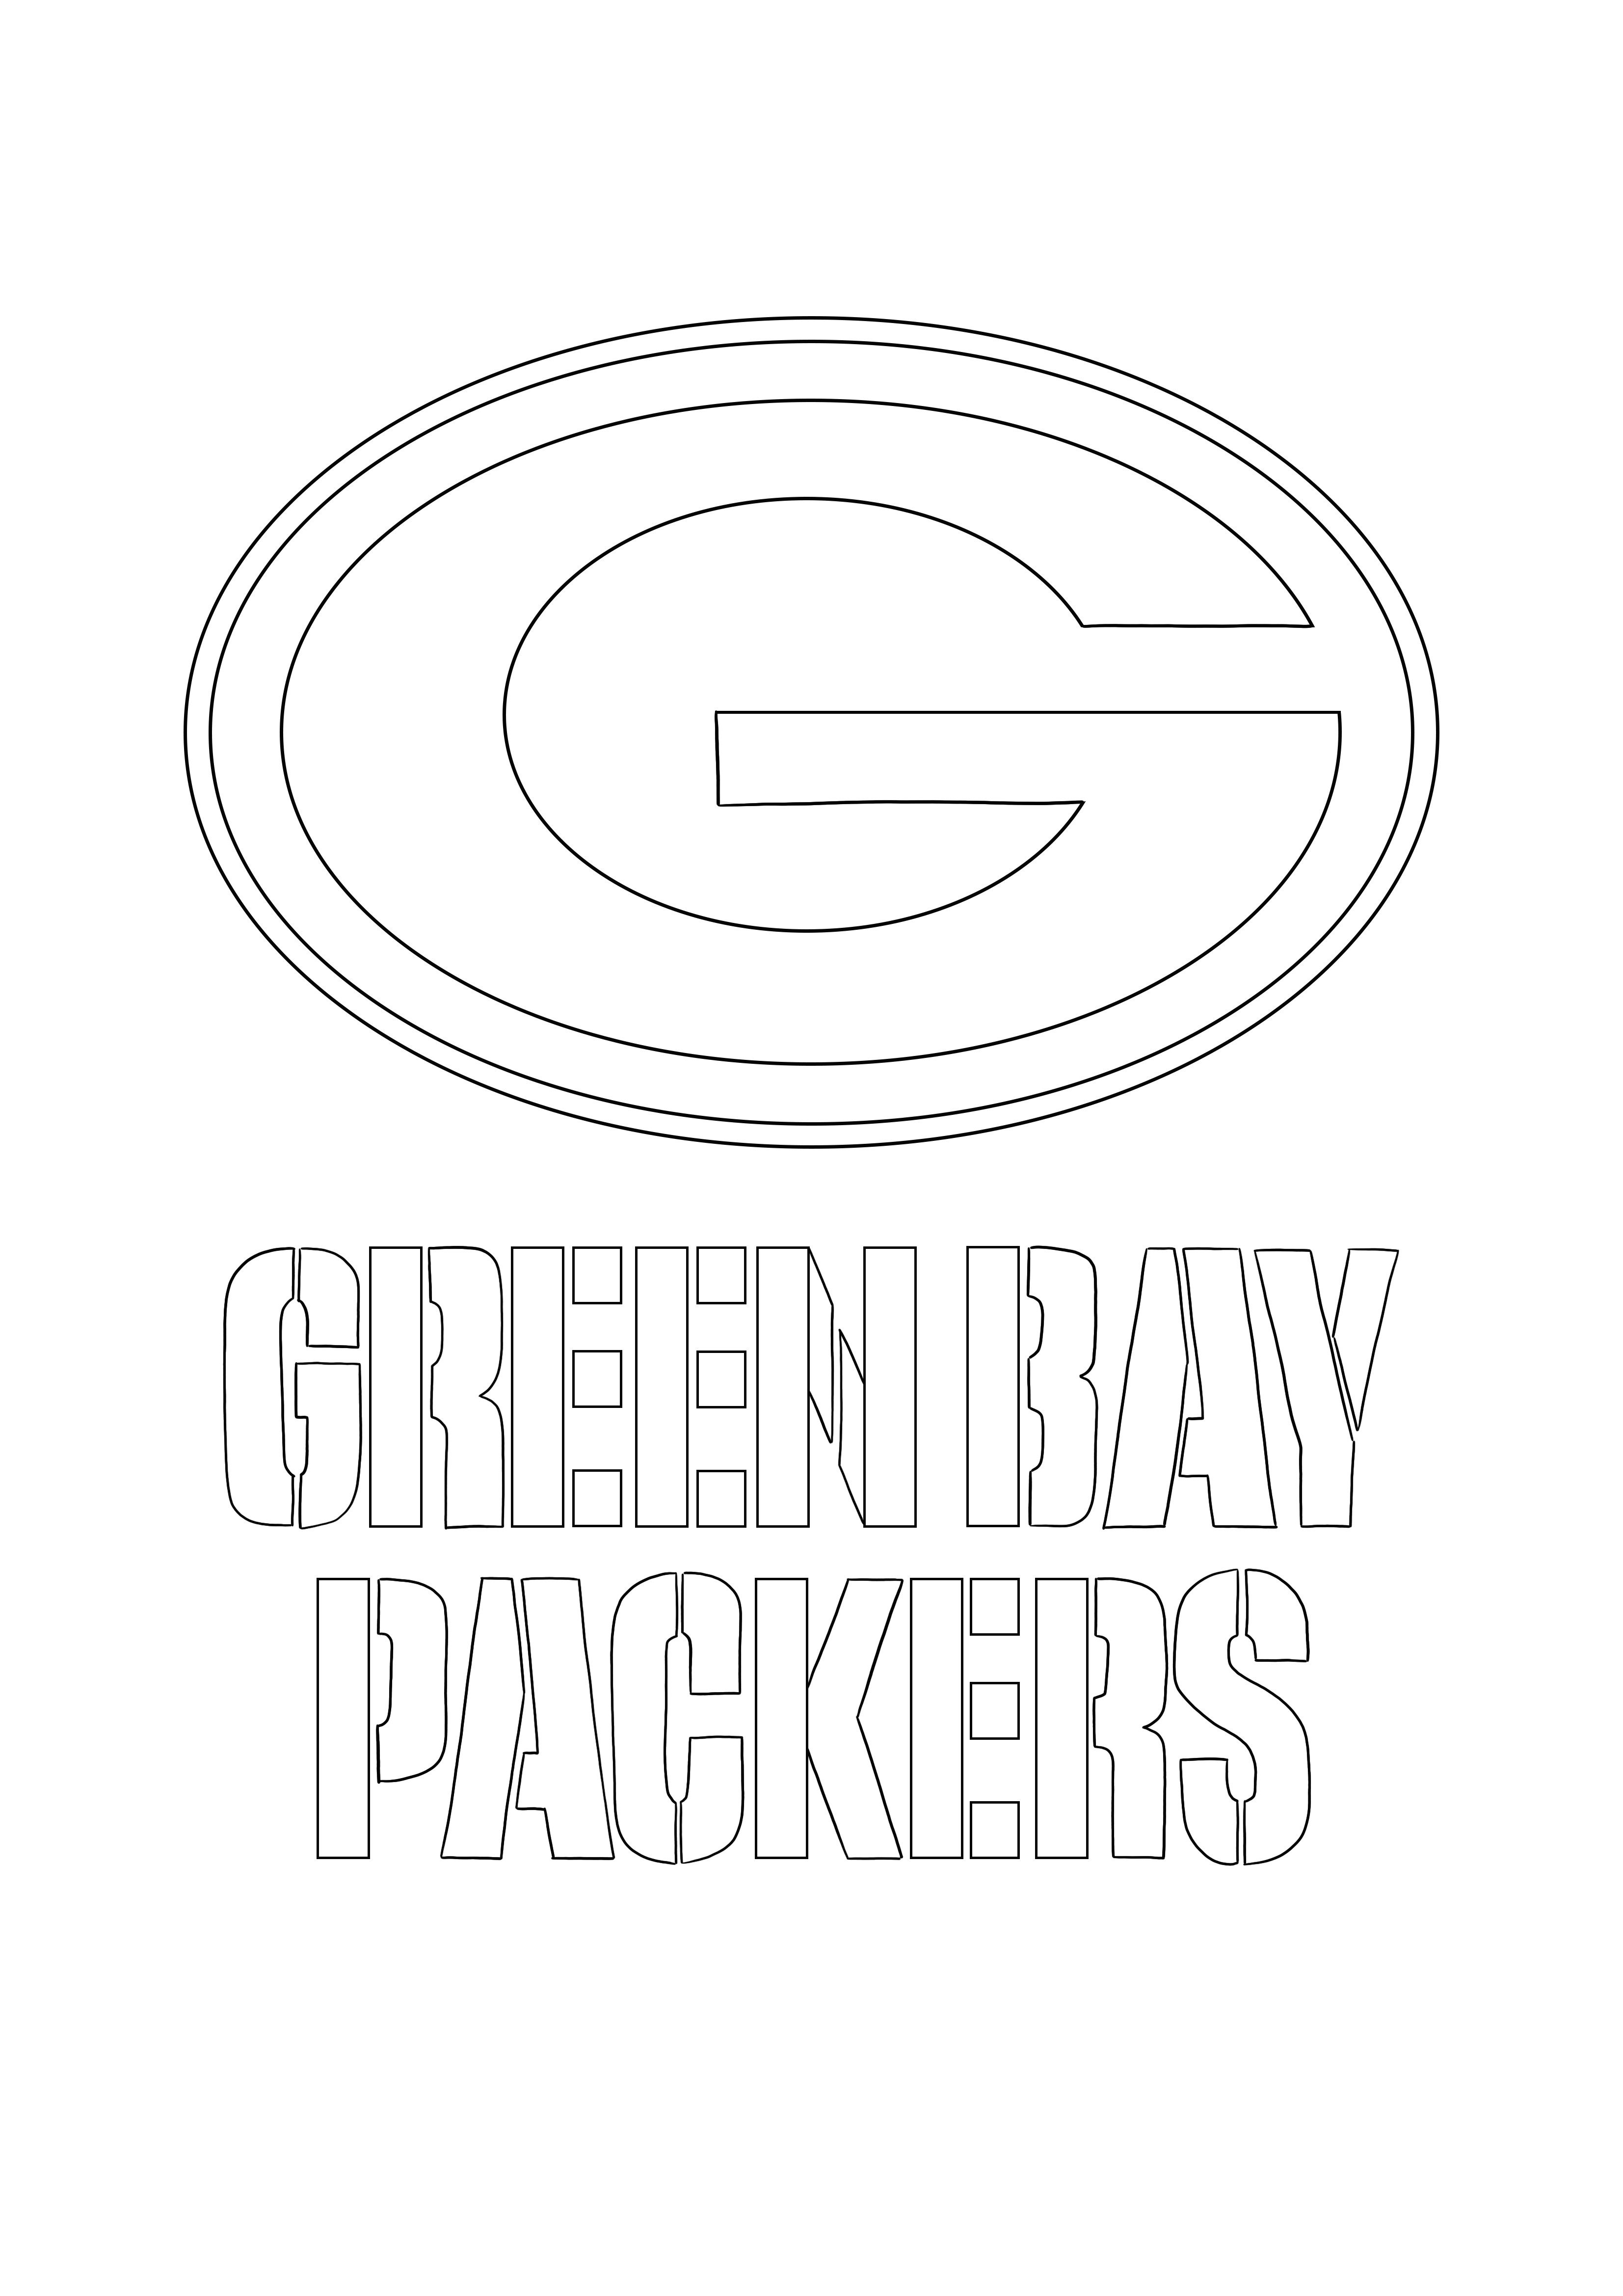 Logo-ul Green Bay Packers este gratuit pentru pagina de colorat și imprimat pentru copii